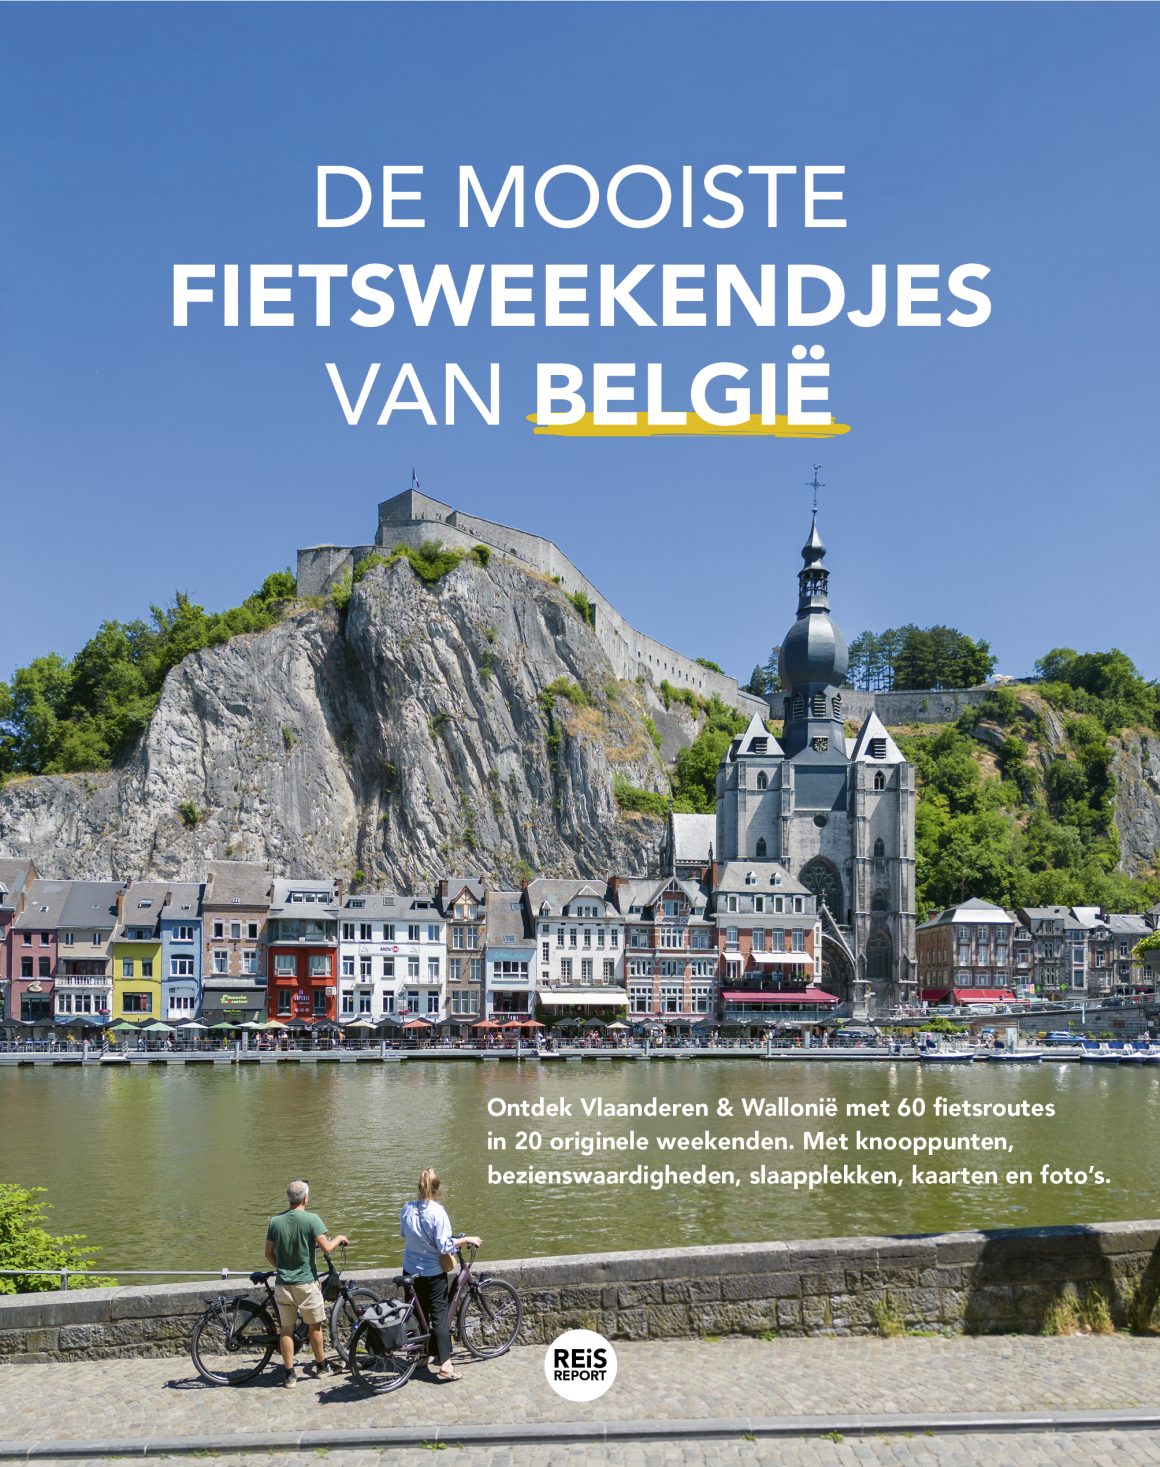 De mooiste fietsroutes en fietsweekendjes van België